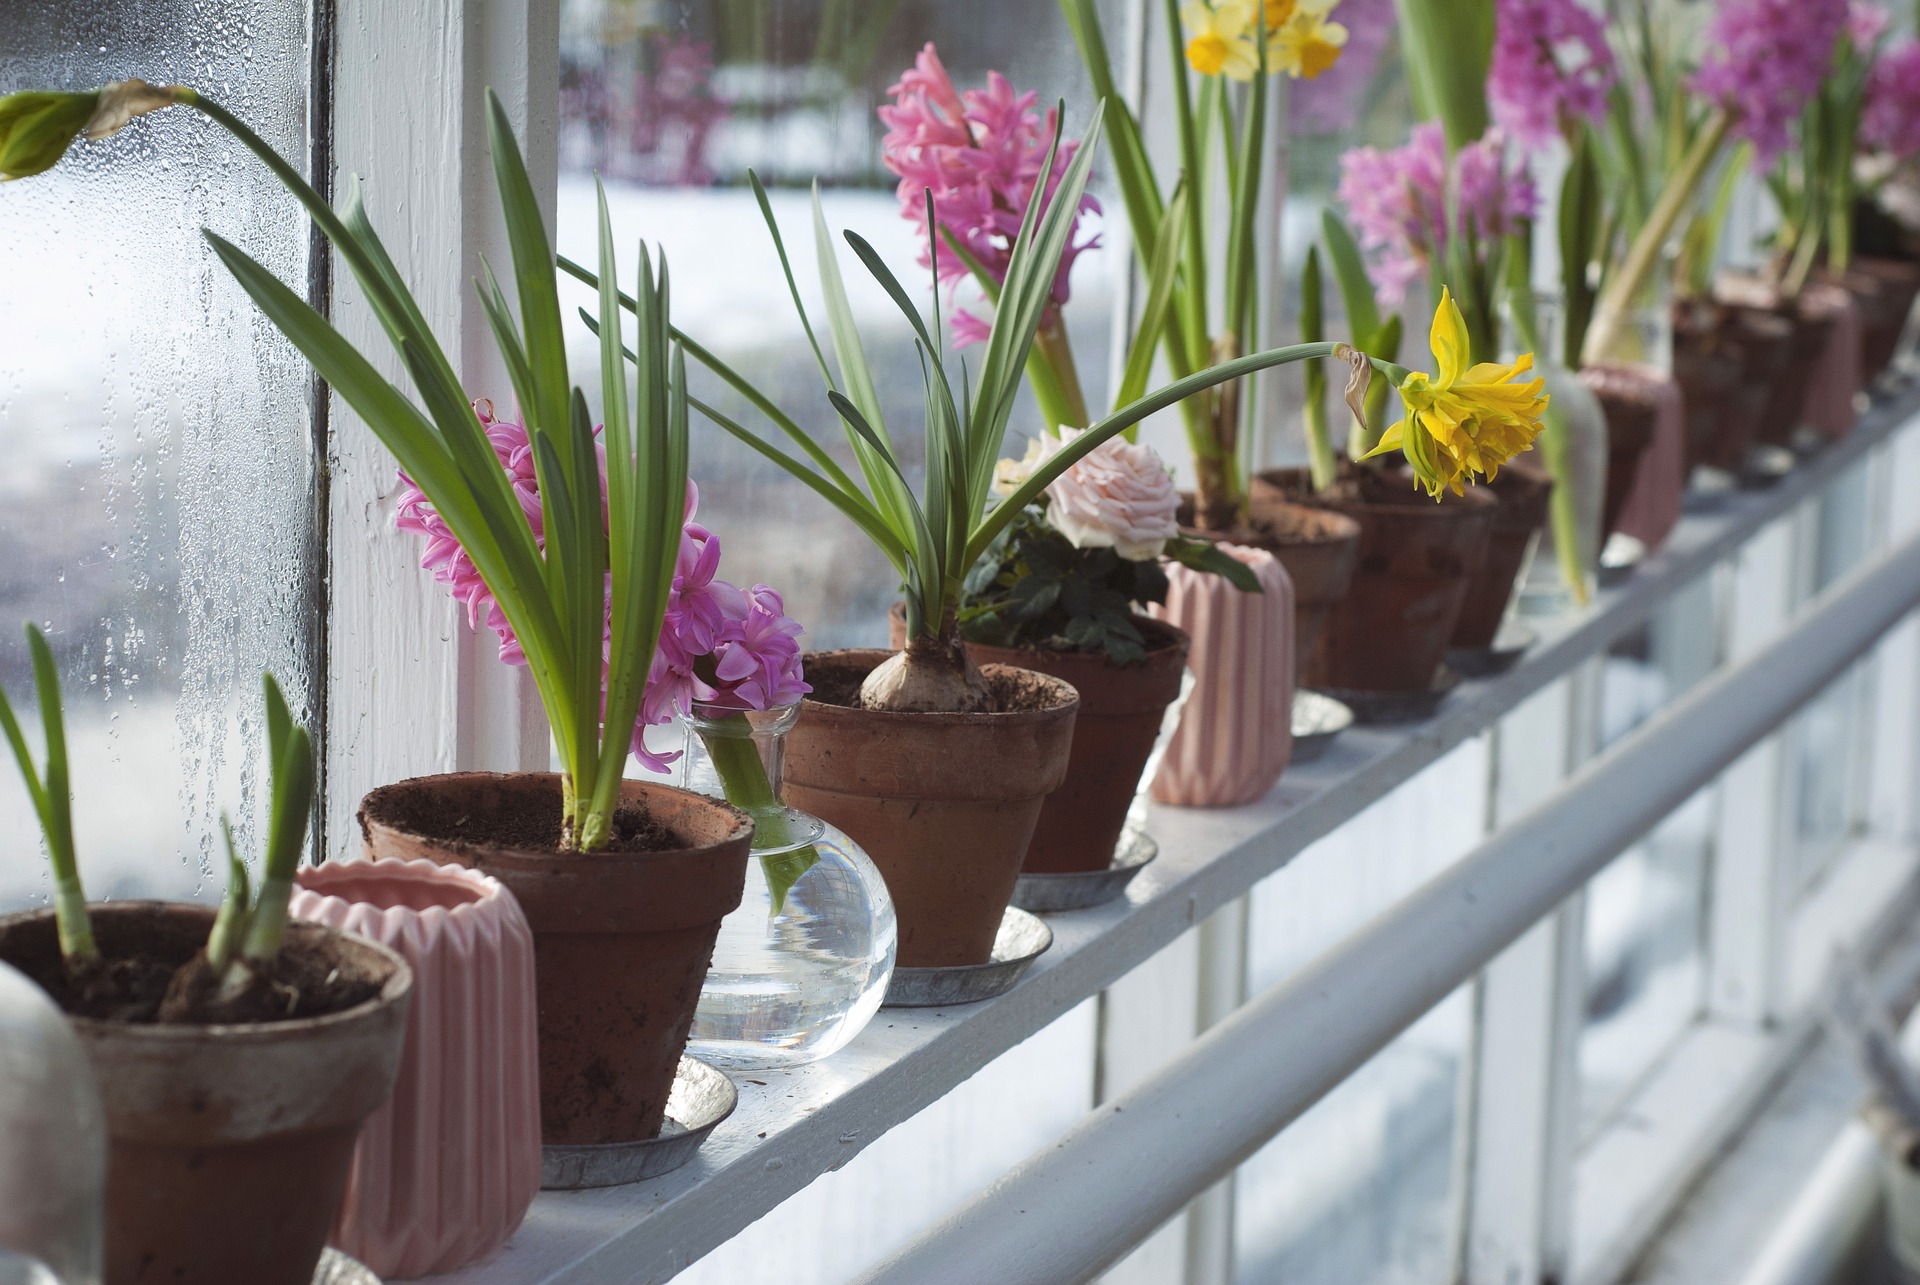 Różowe hiacynty i żółte narcyzy w glinianych doniczkach na parapetach przy oknie z kondensacją.